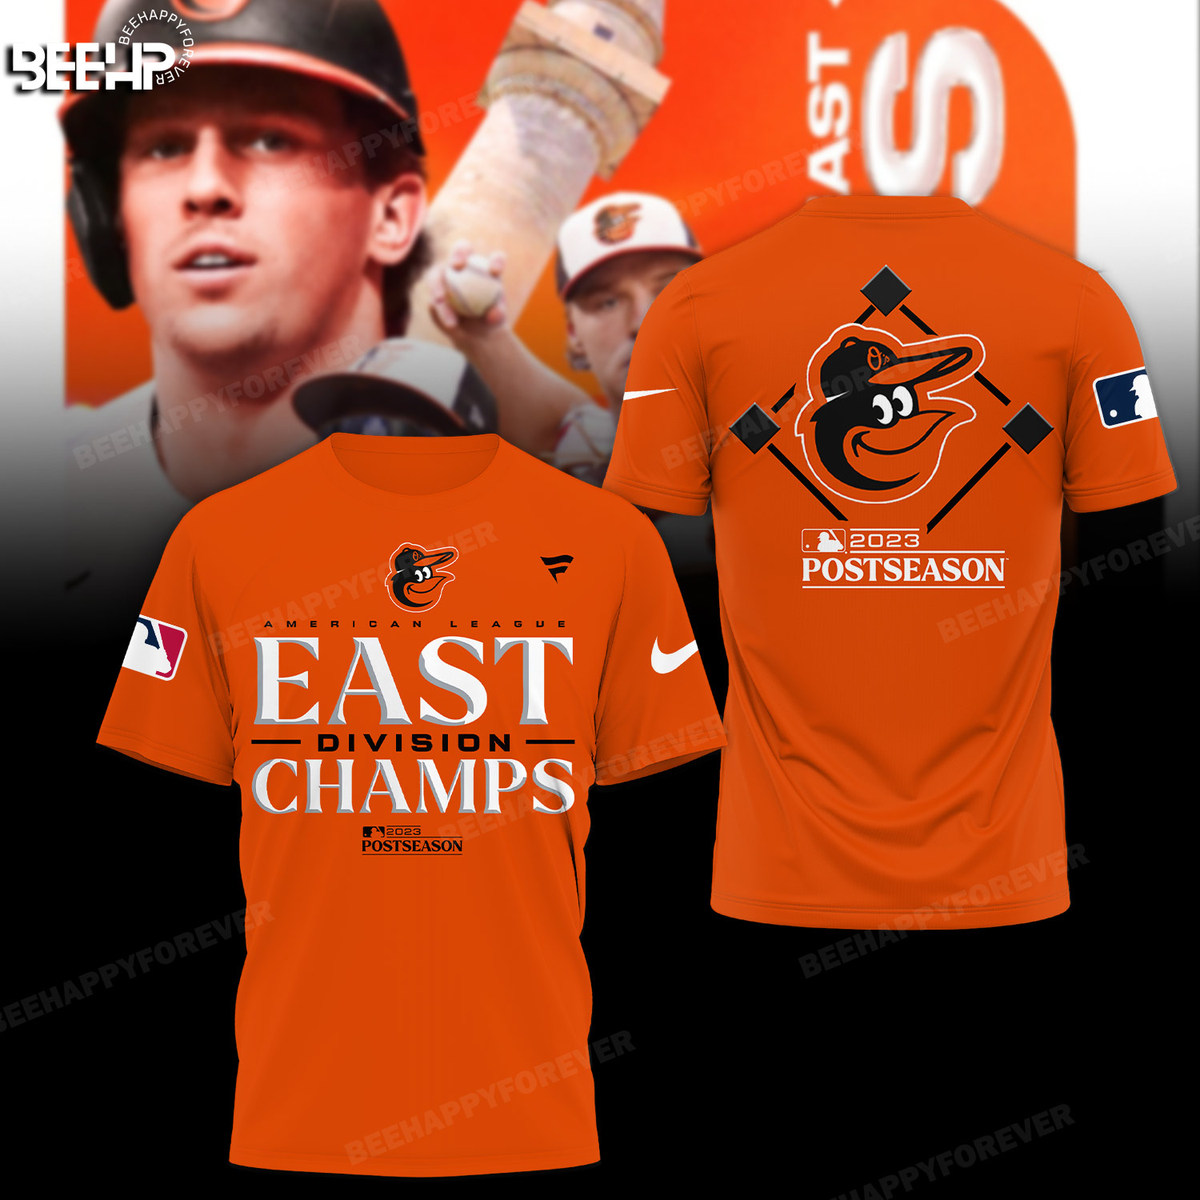 Orioles AL East Champions Shirt